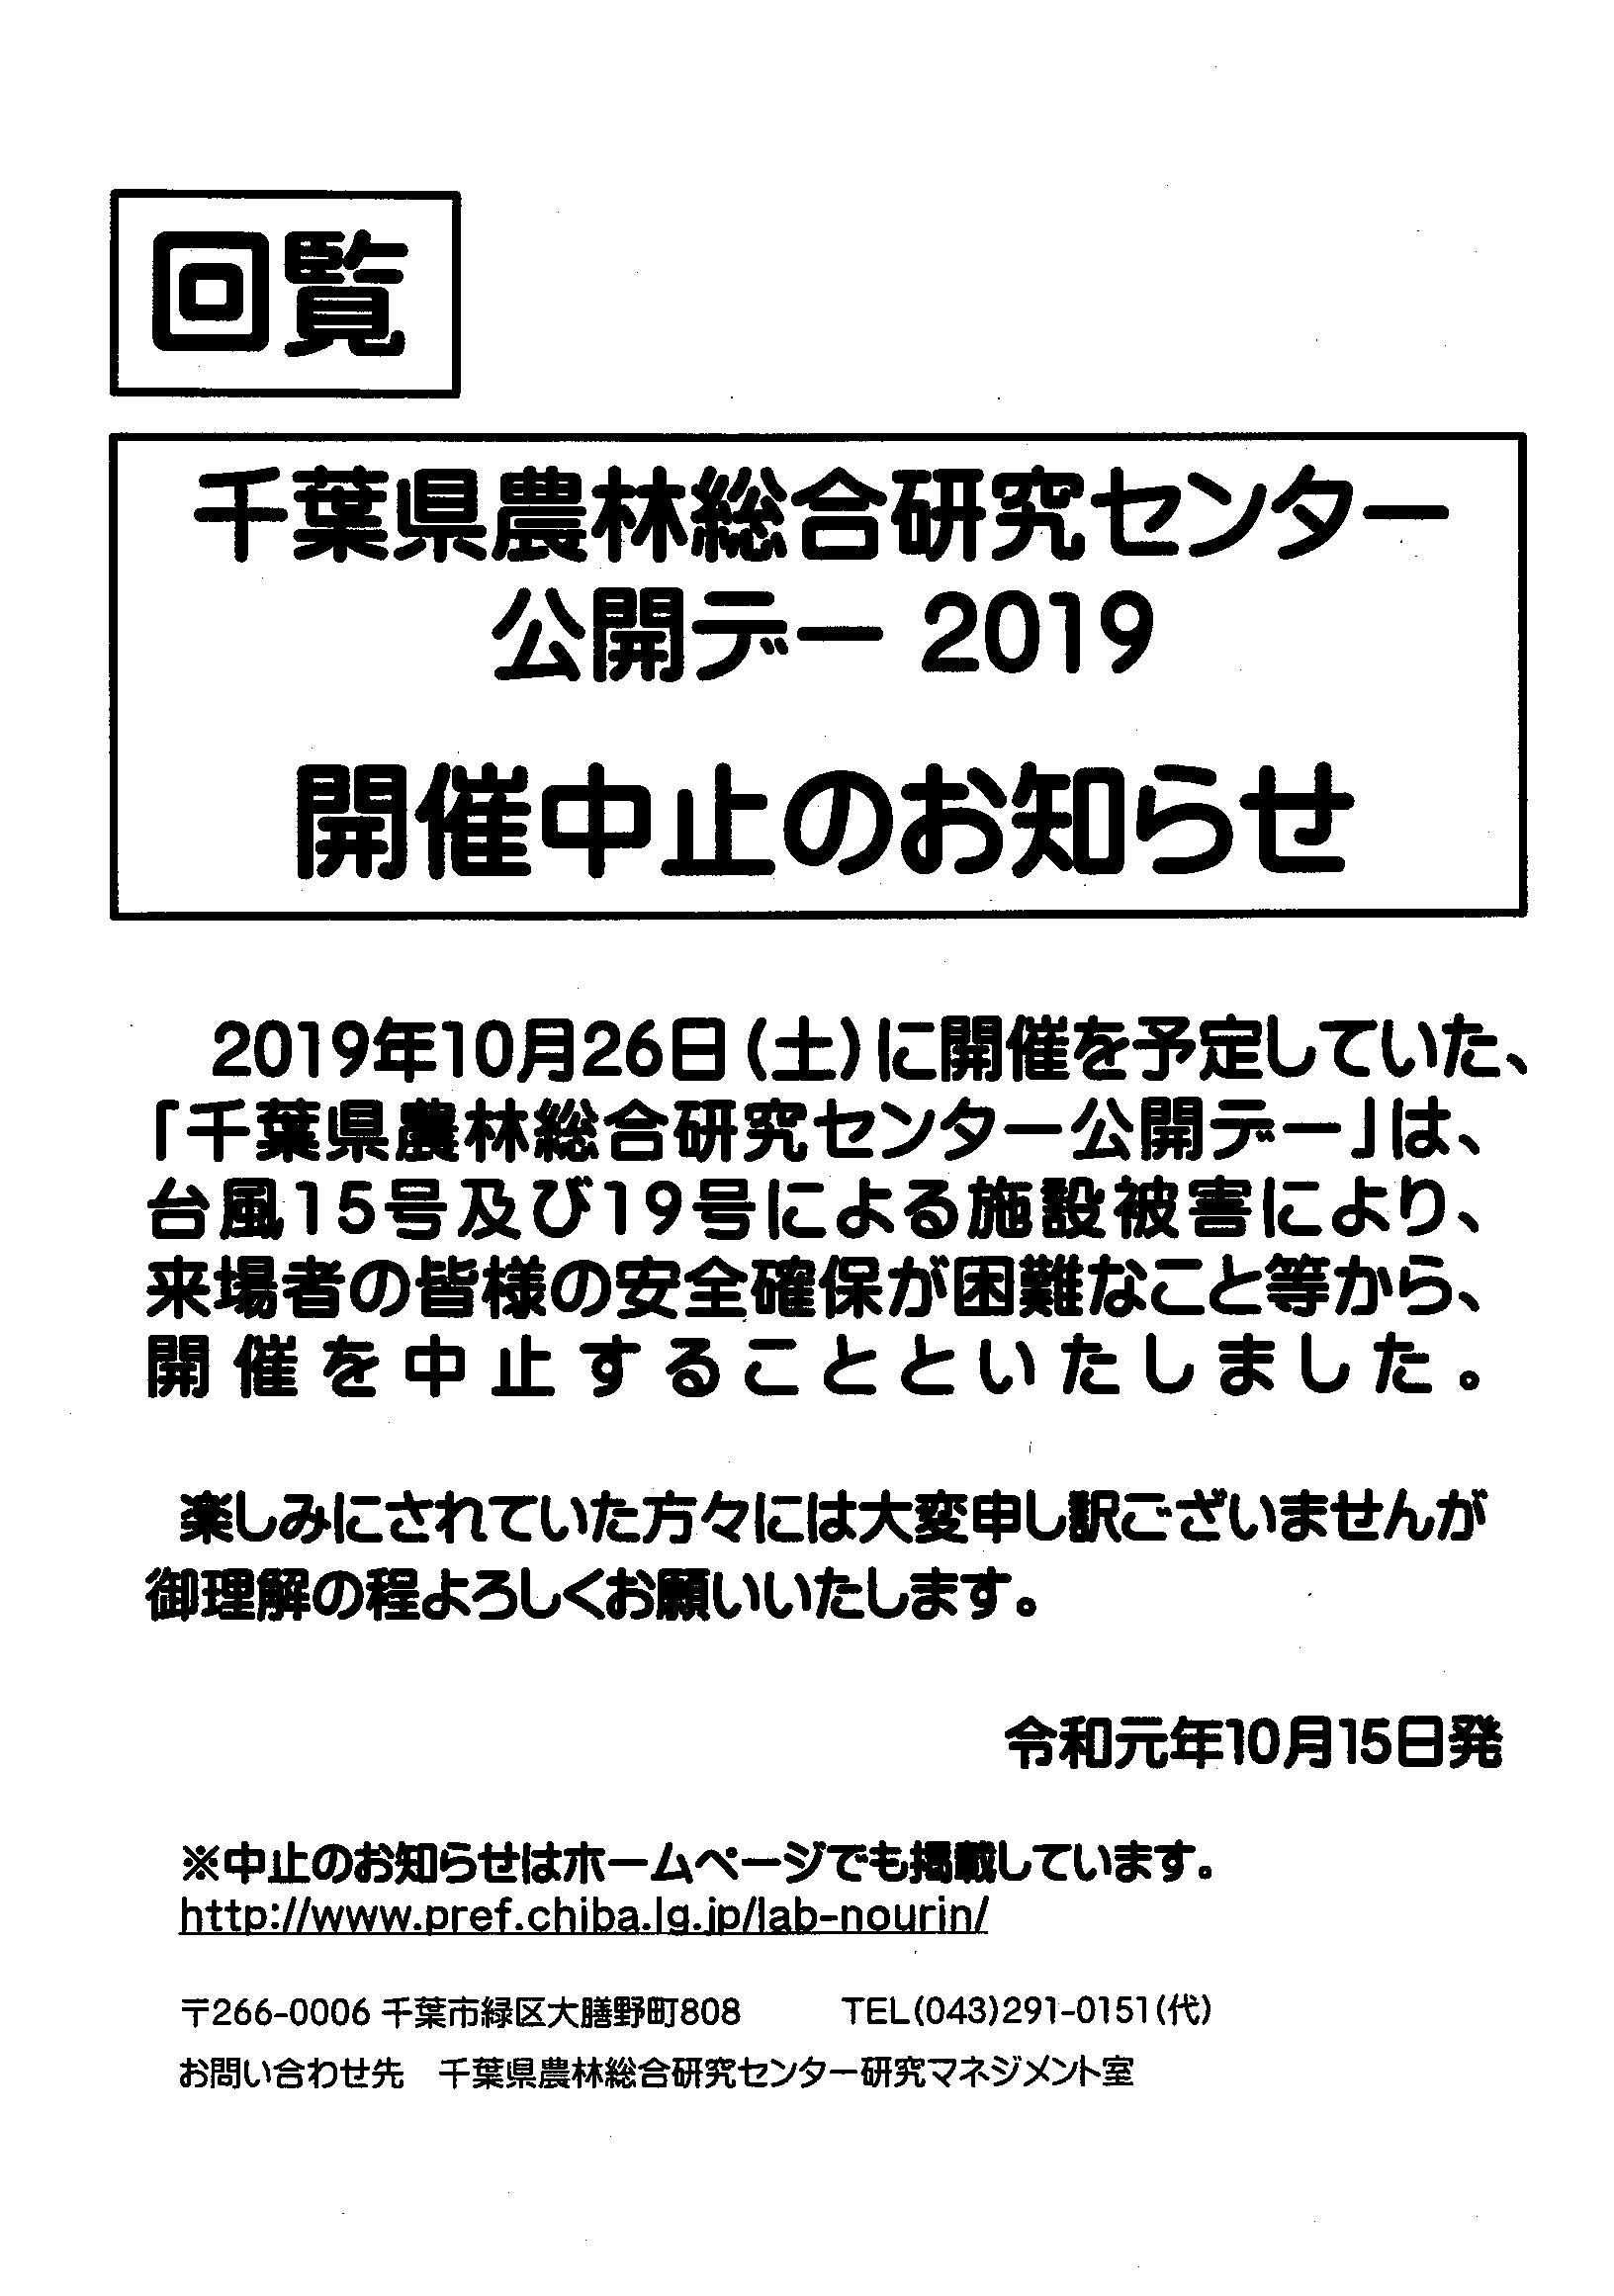 千葉県農林総合研究センター公開デー2019開催中止のお知らせ